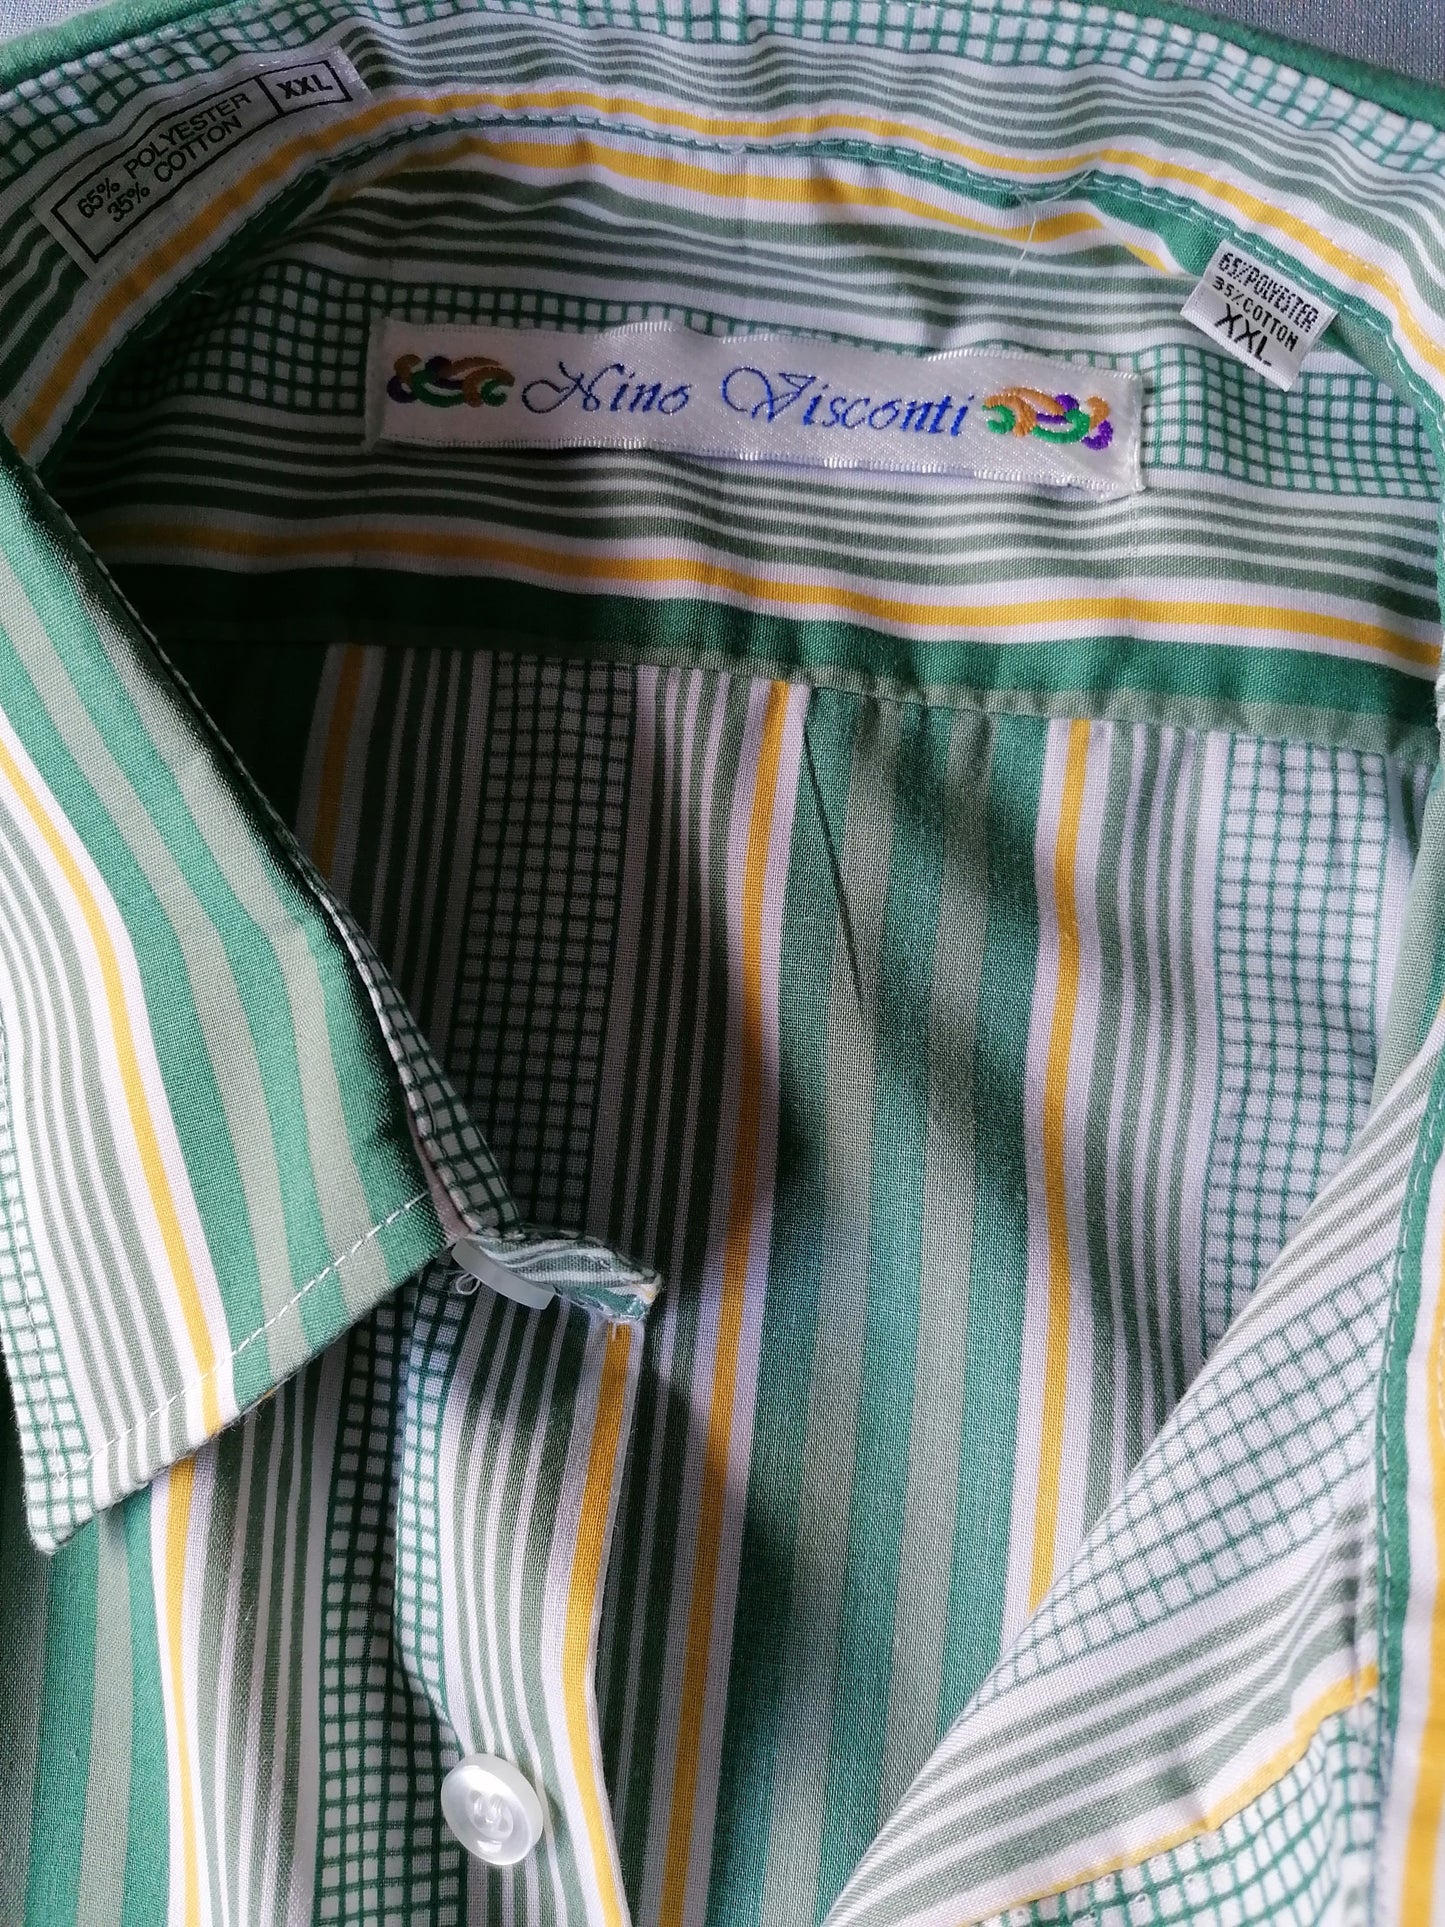 Shirt corto Vintage Nino Visconti. Giallo grigio verde. Dimensione XXL / 2XL. 65% di poliestere e 35% di cotone